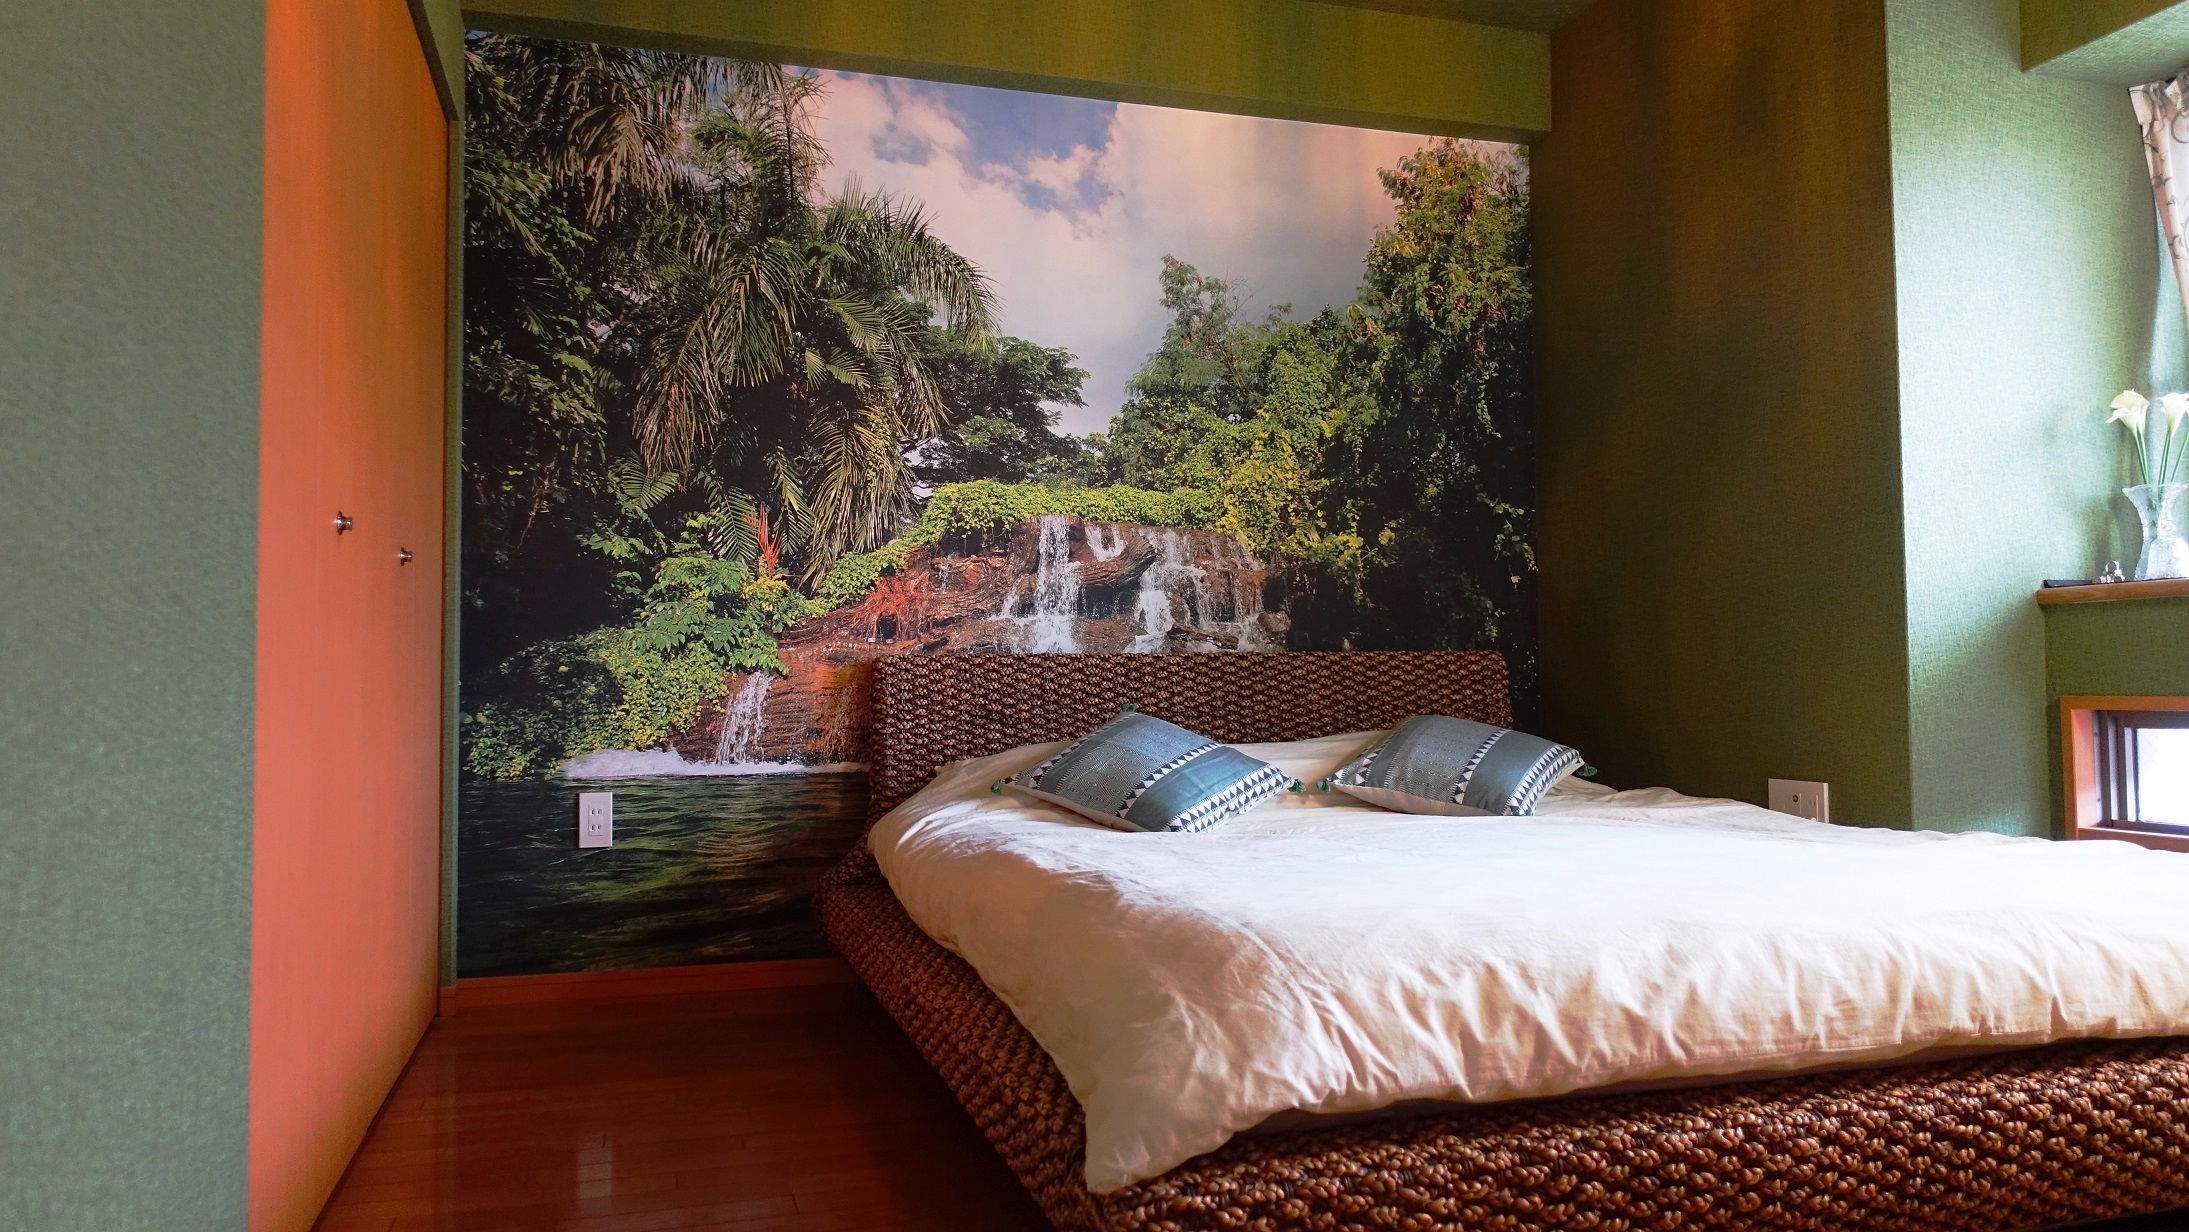 ベッドルームを劇的リフォーム 壁紙を最大活用してリゾート風に Resort Style Interior Change The Bedroom Dramatically With Wallpaper スイス人 レネの日本暮らし Renejapan Com